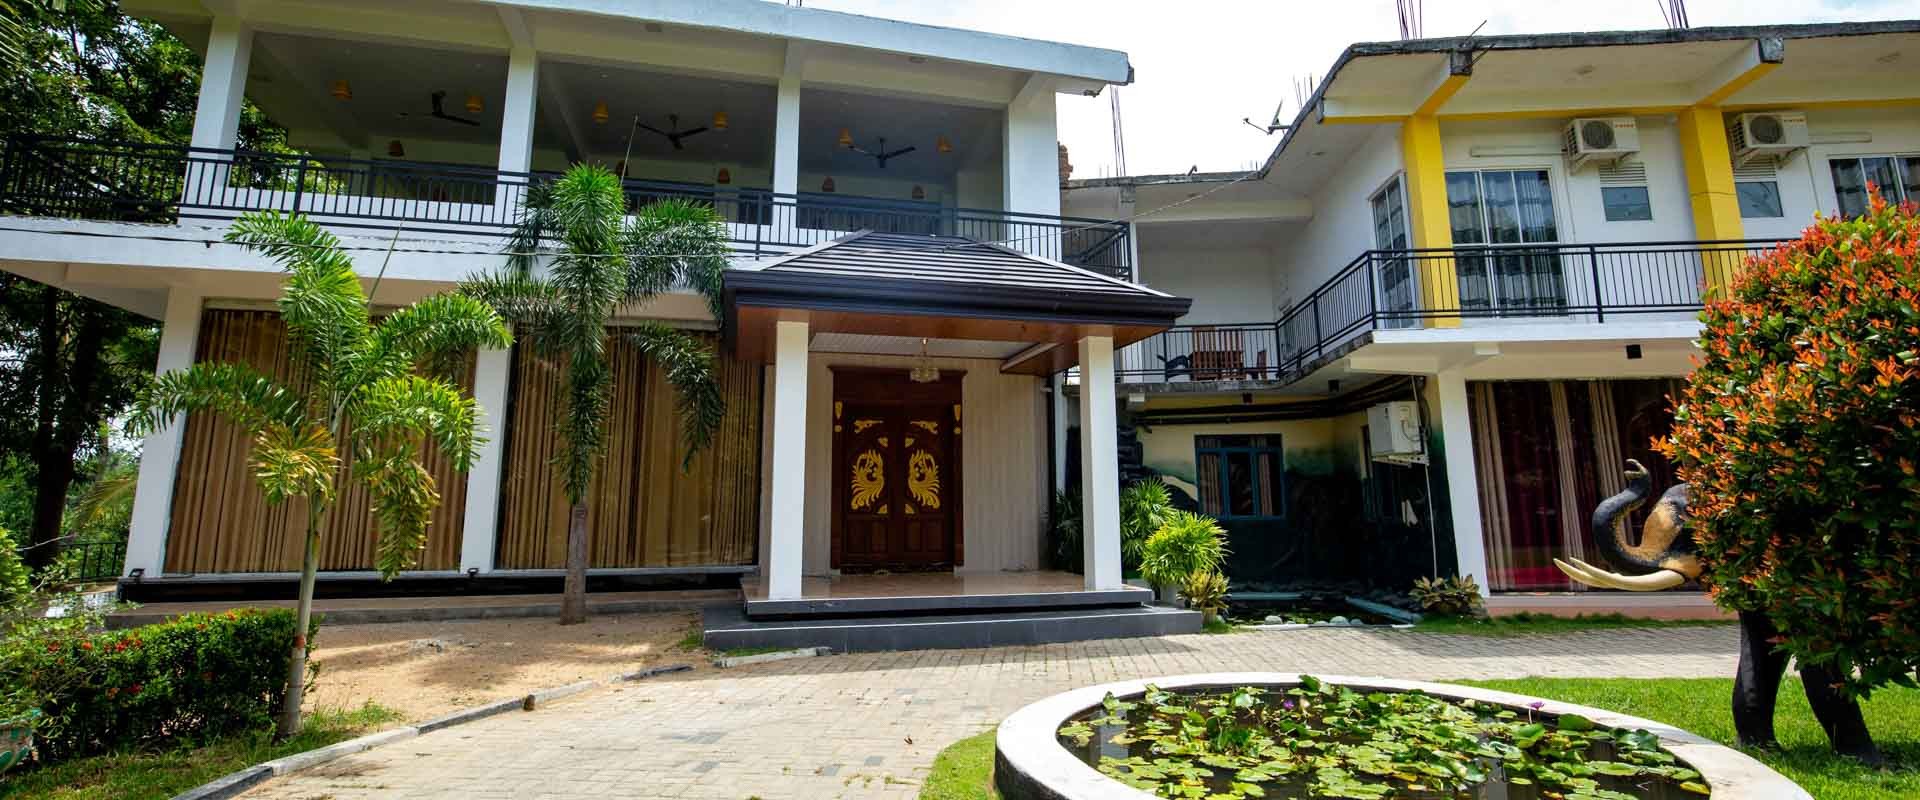 Mindatha hotel - Gateway to East